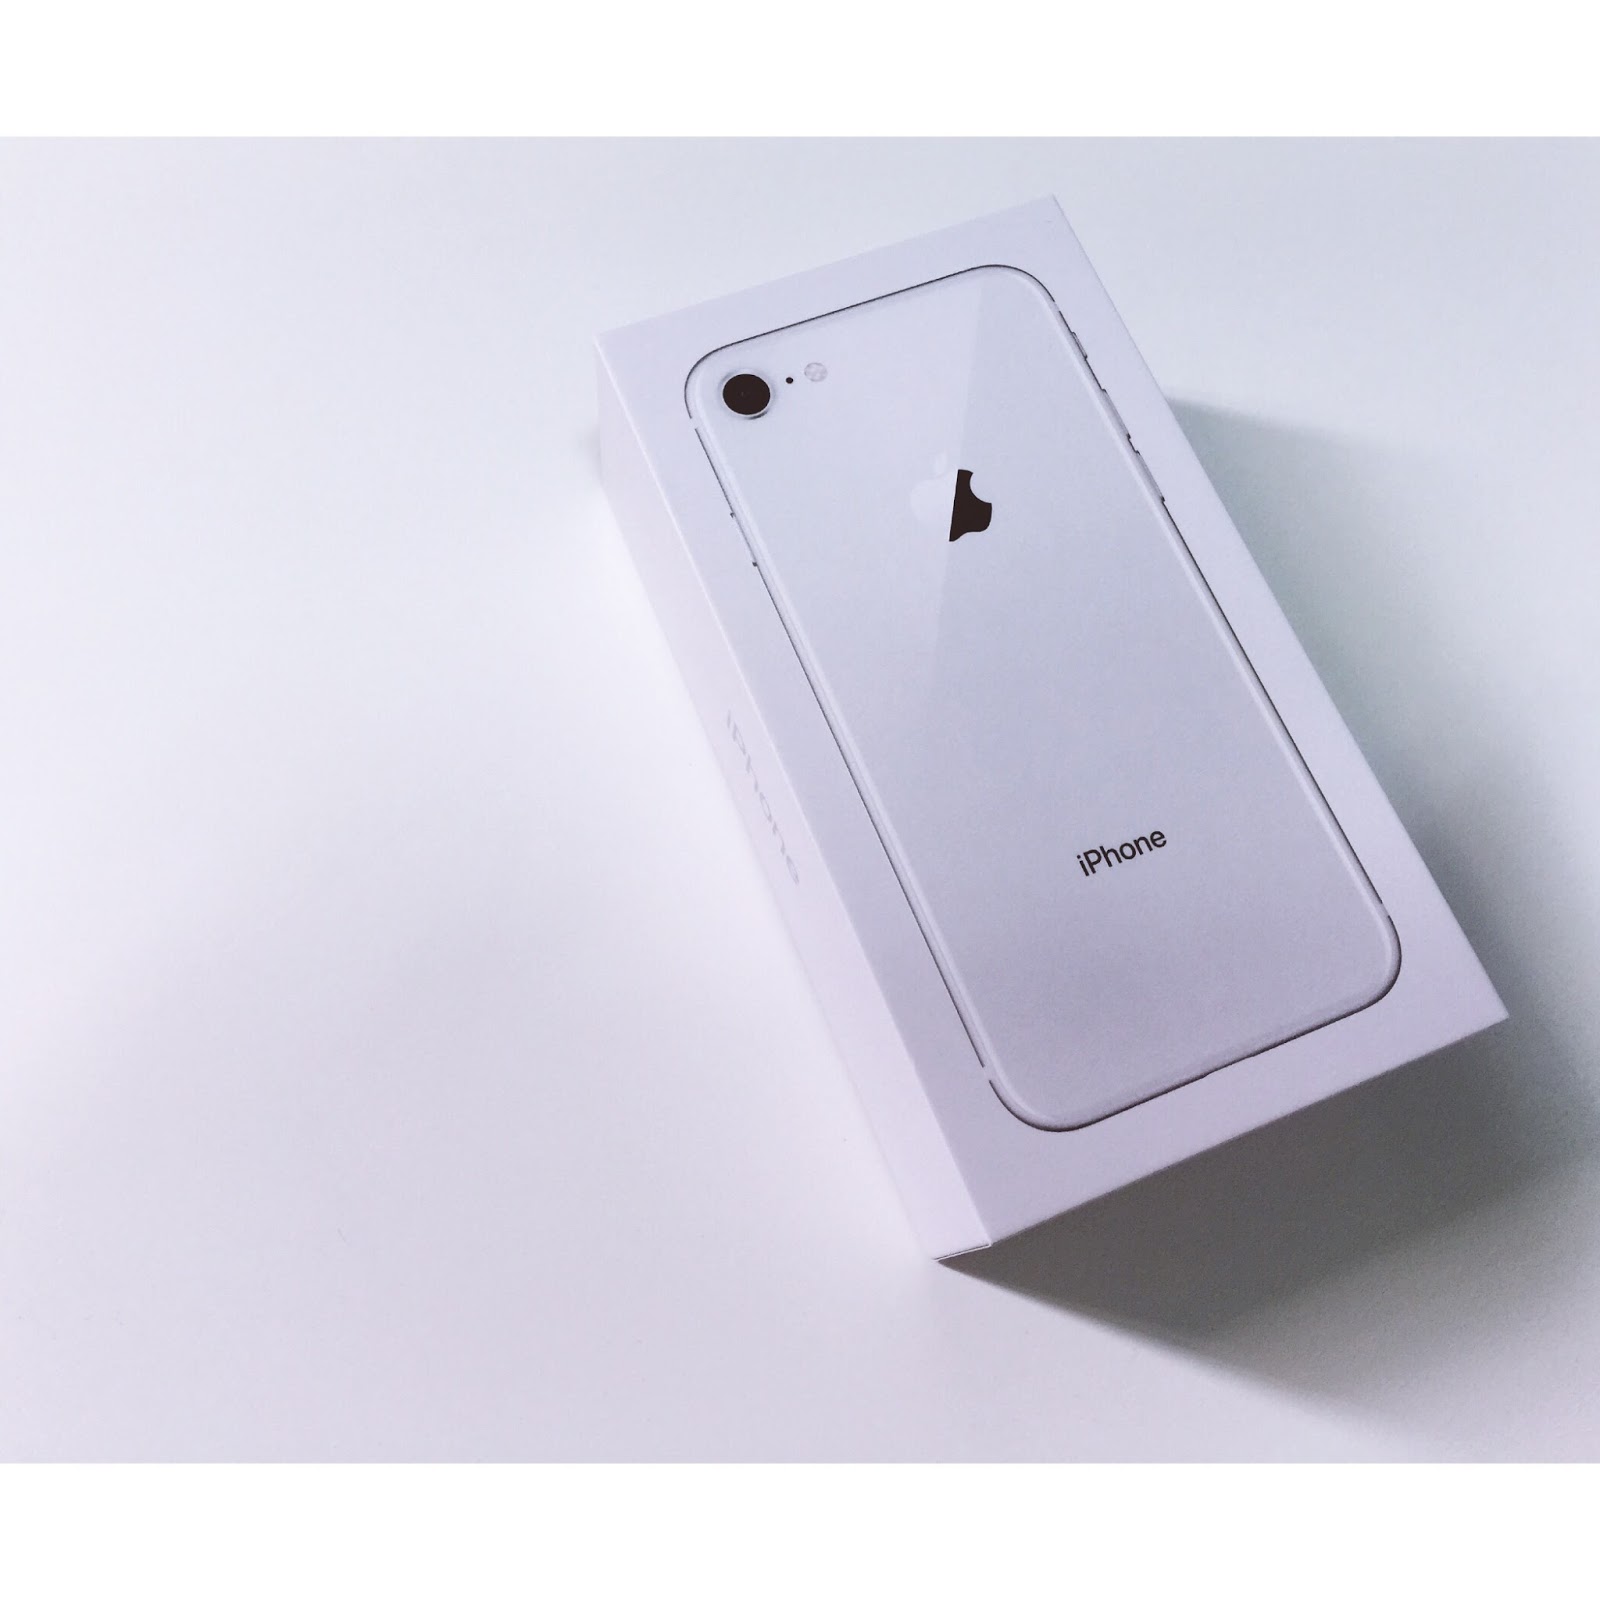 開箱 Apple Iphone 8 銀色